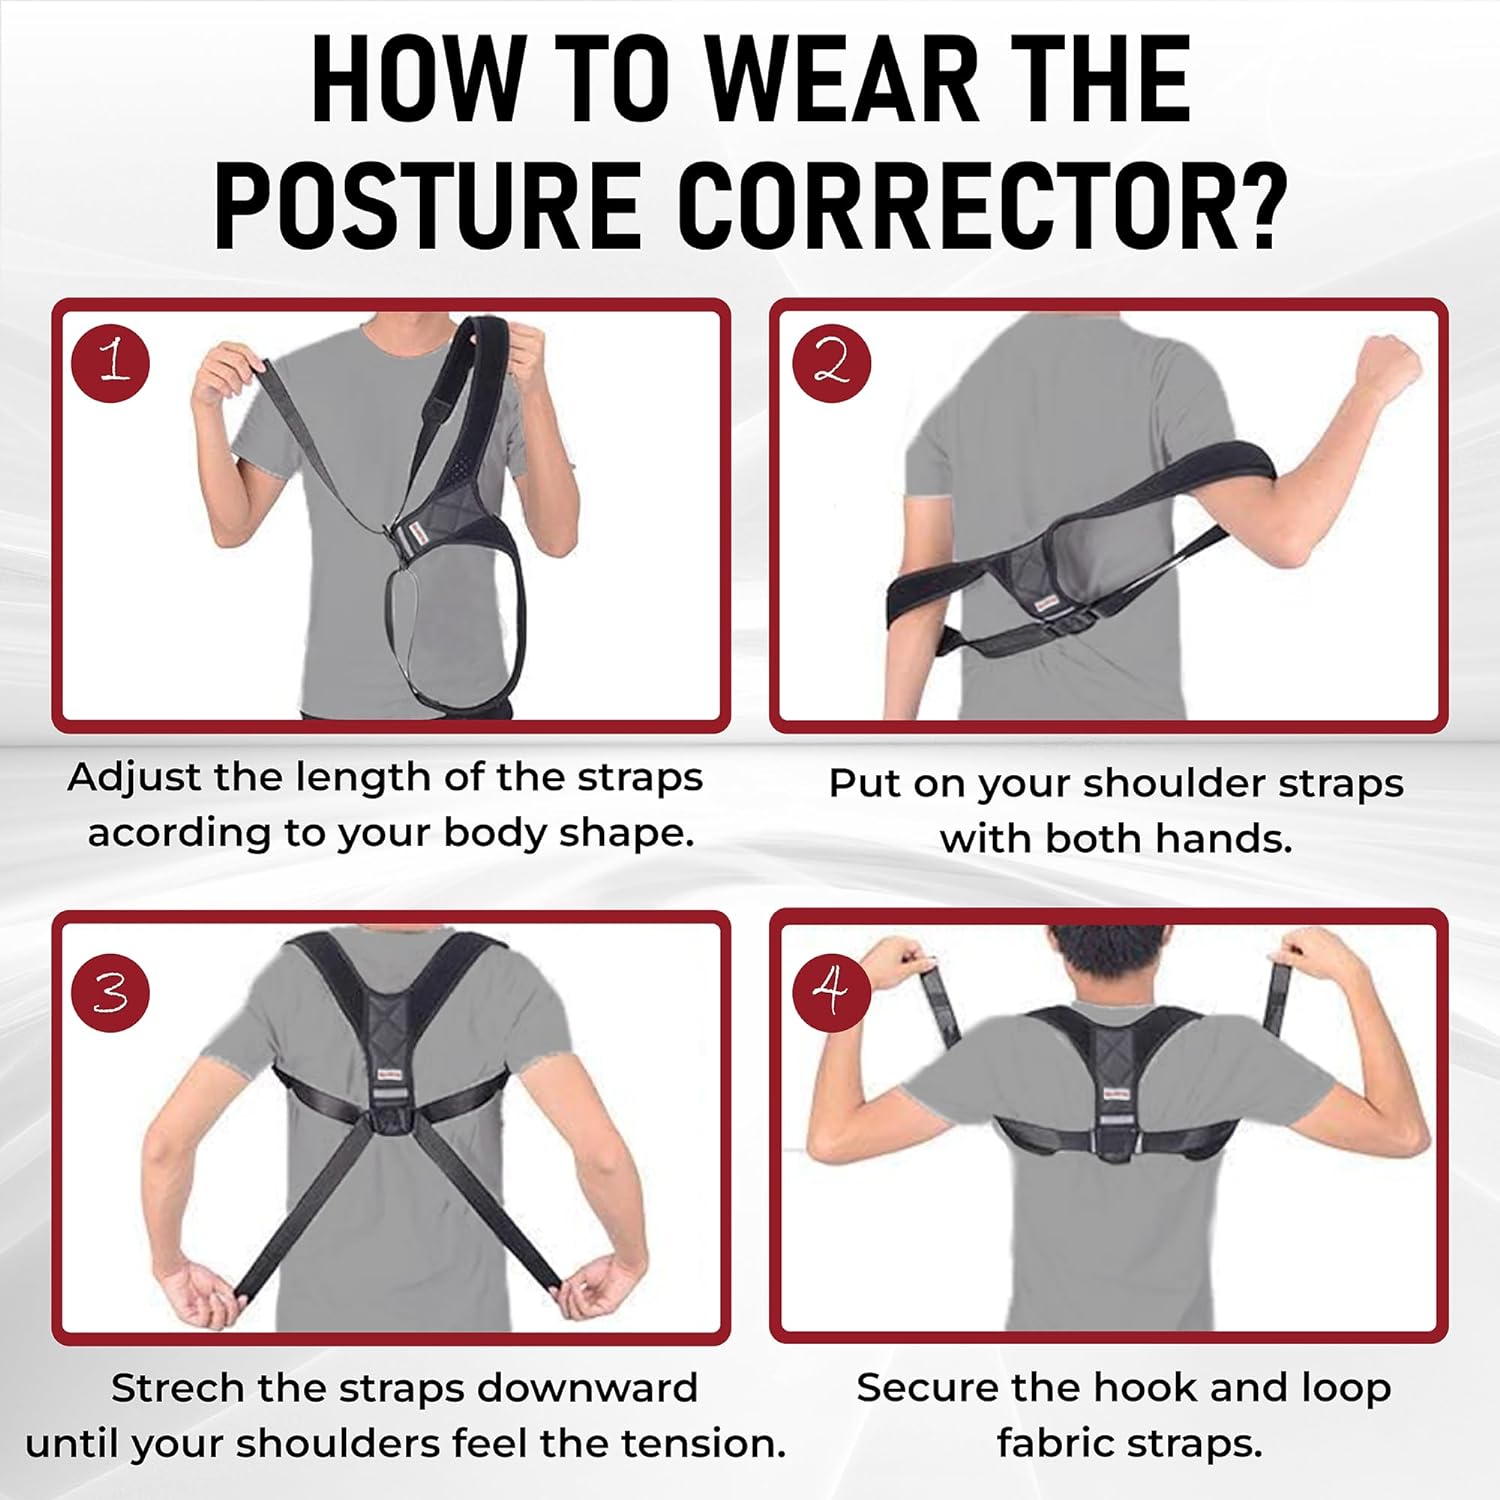 shrink Posture Corrector Back Support Brace